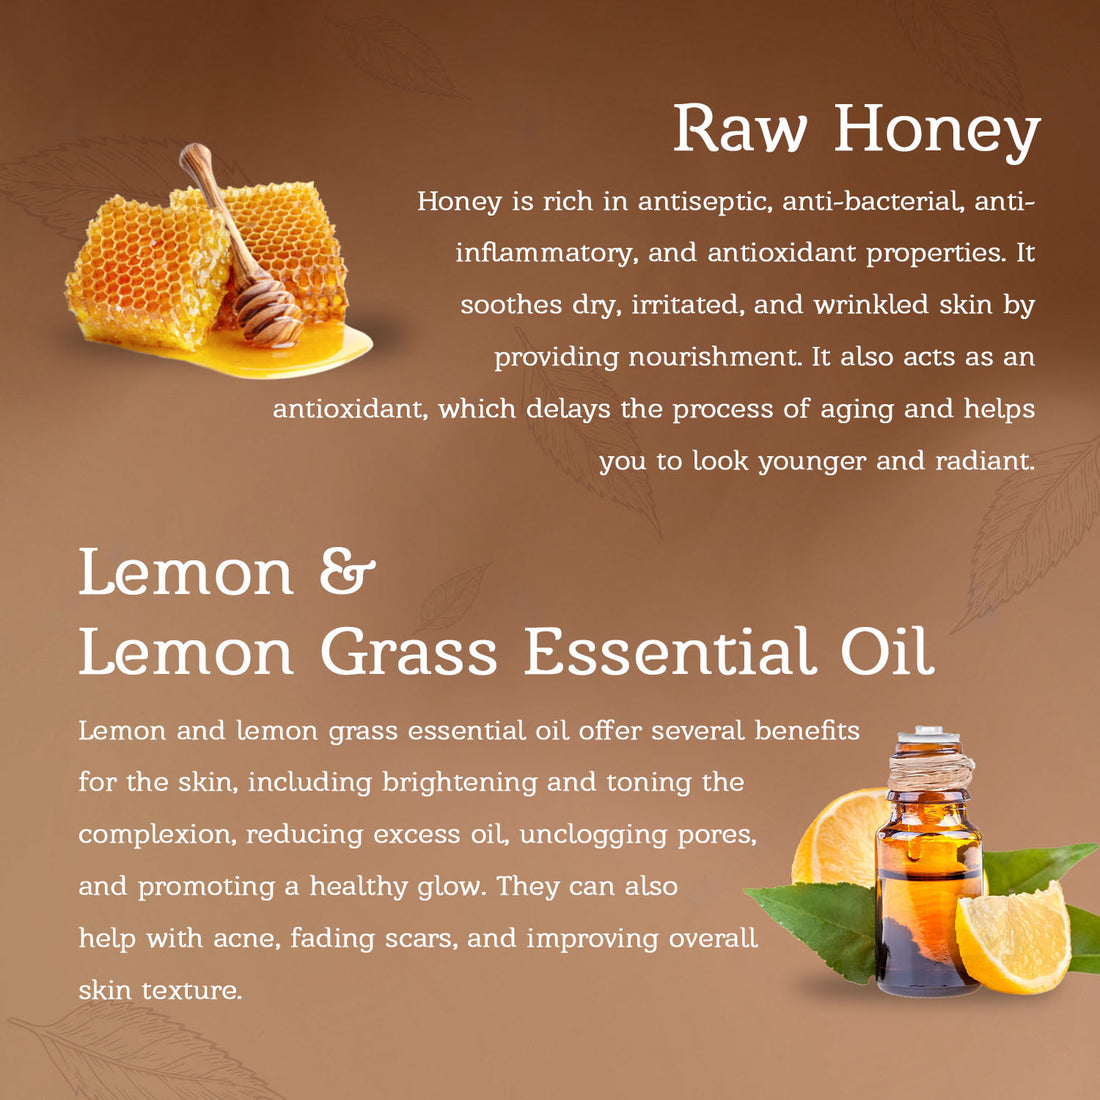 Honey &amp; Lemon Soap For Radiant Skin